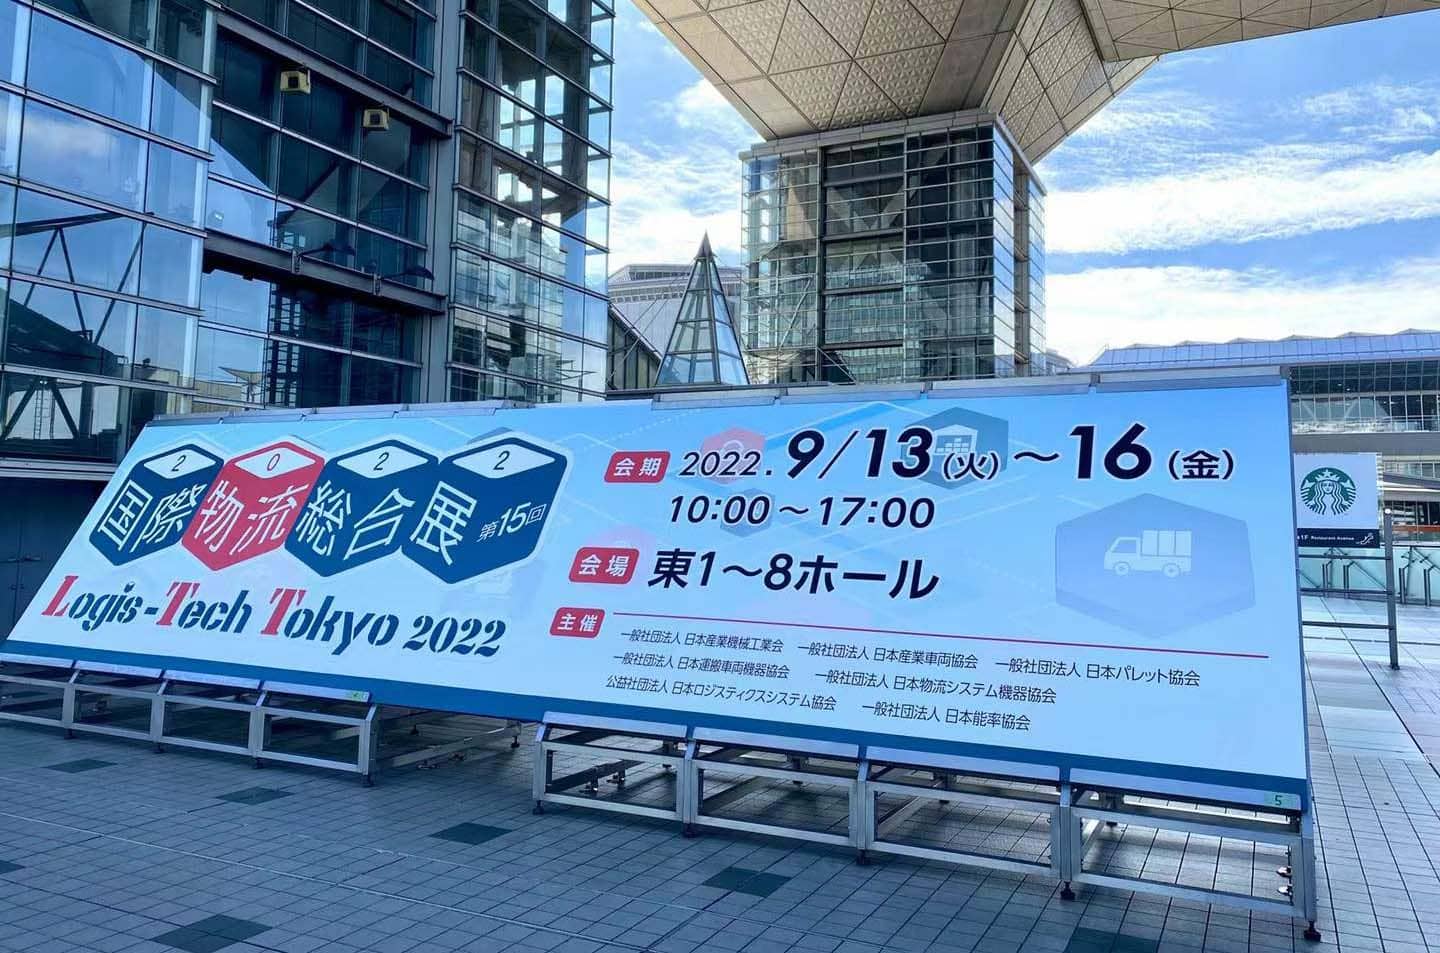 MIMA asiste al centro de innovación de Logistics World 2022-LTT Tokio